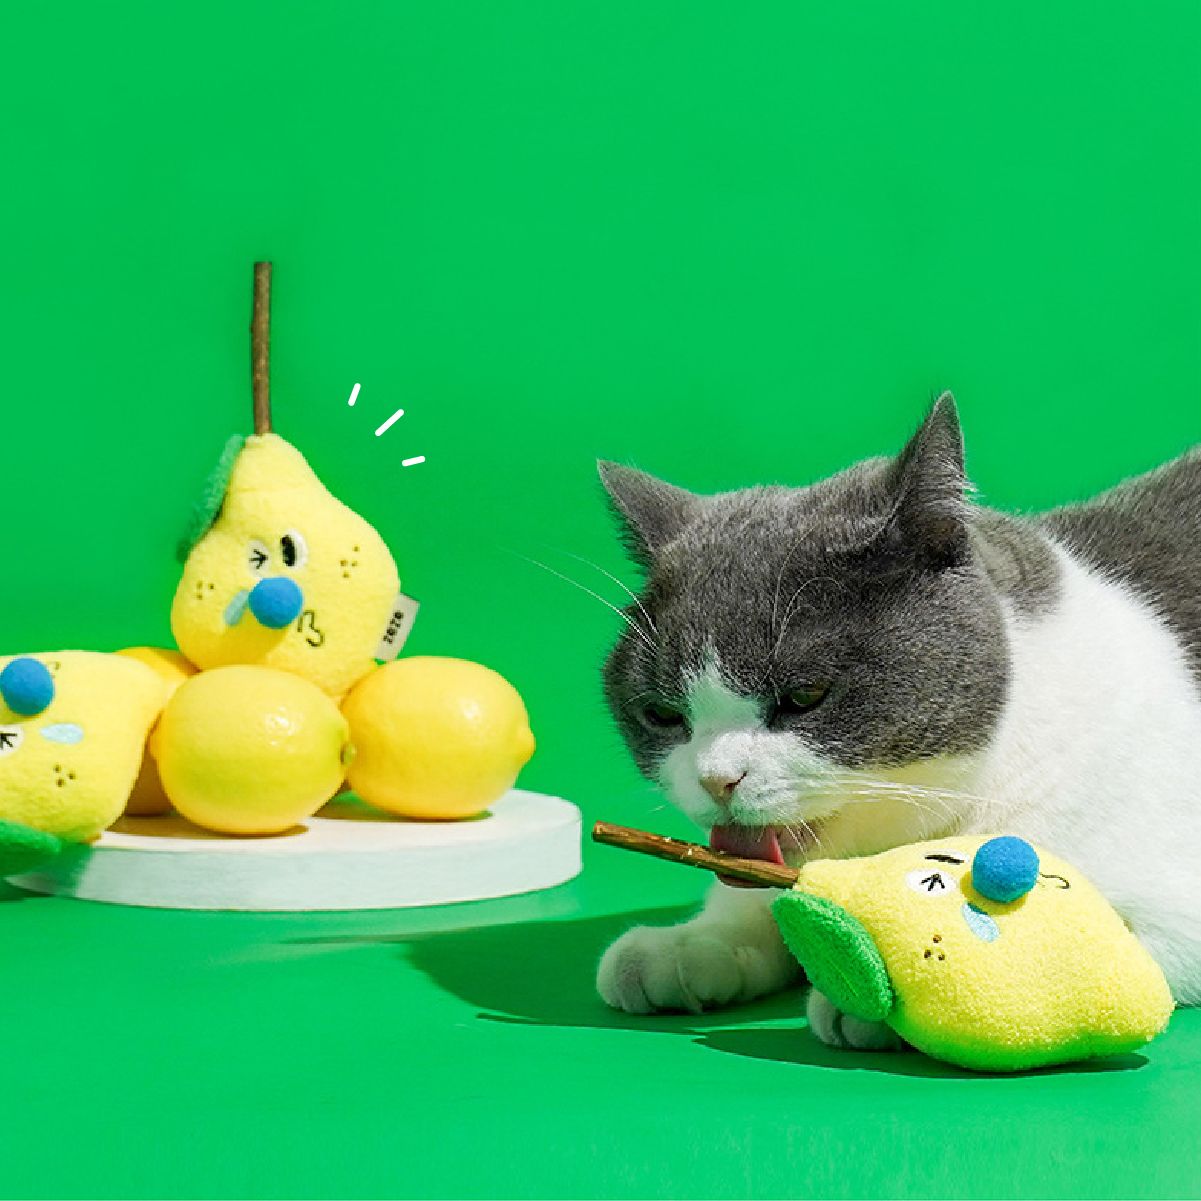 Zeze 檸檬造型木天蓼貓草玩具 舒緩放鬆心情 寵物玩具